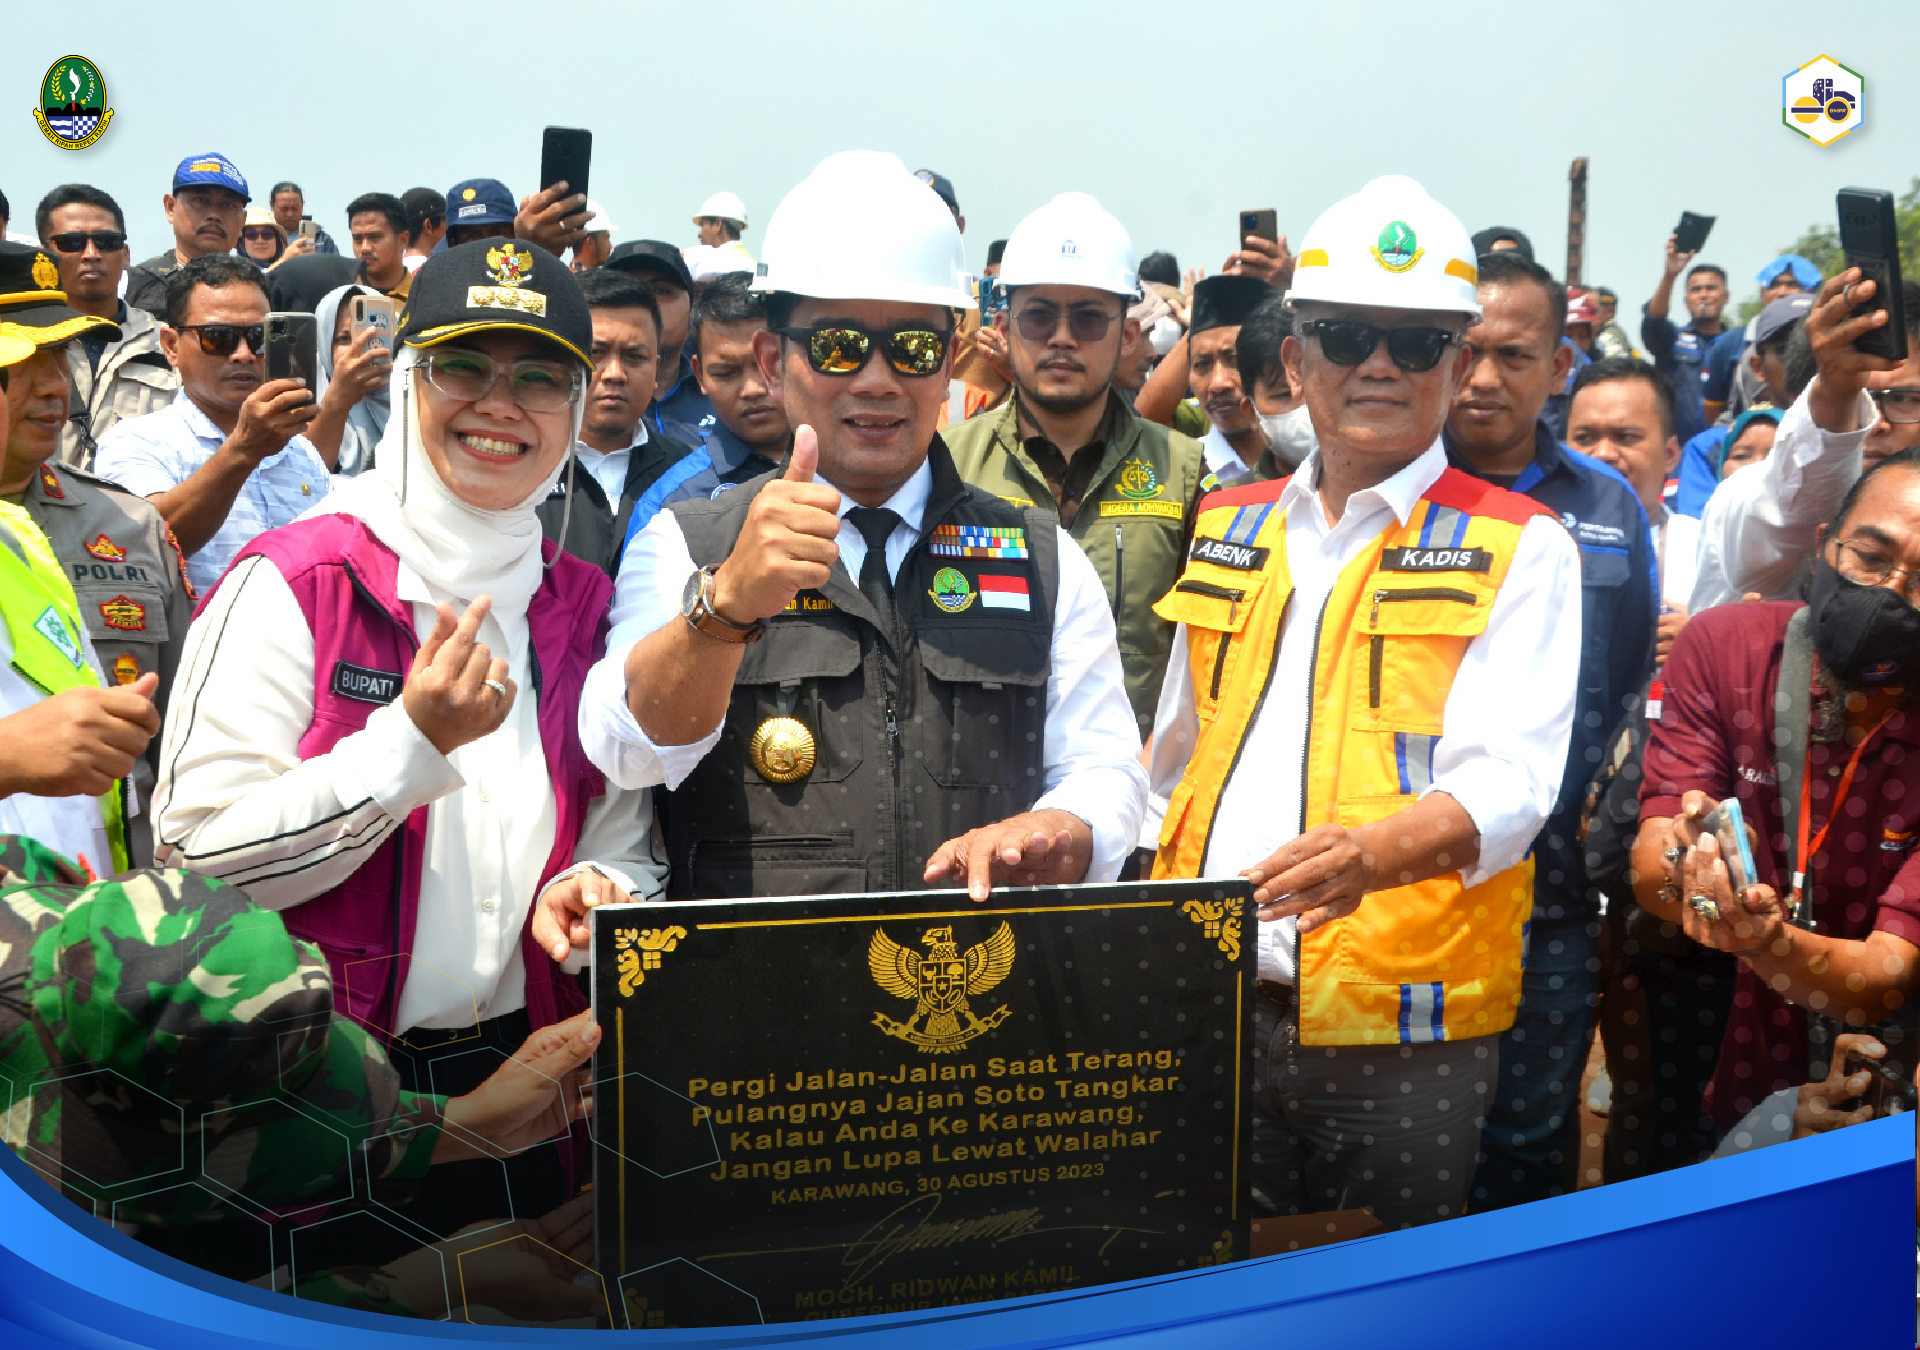 Pembangunan Jembatan Walahar Rasa Cinta Pimpinan  Jawa Barat pada Warga Karawang